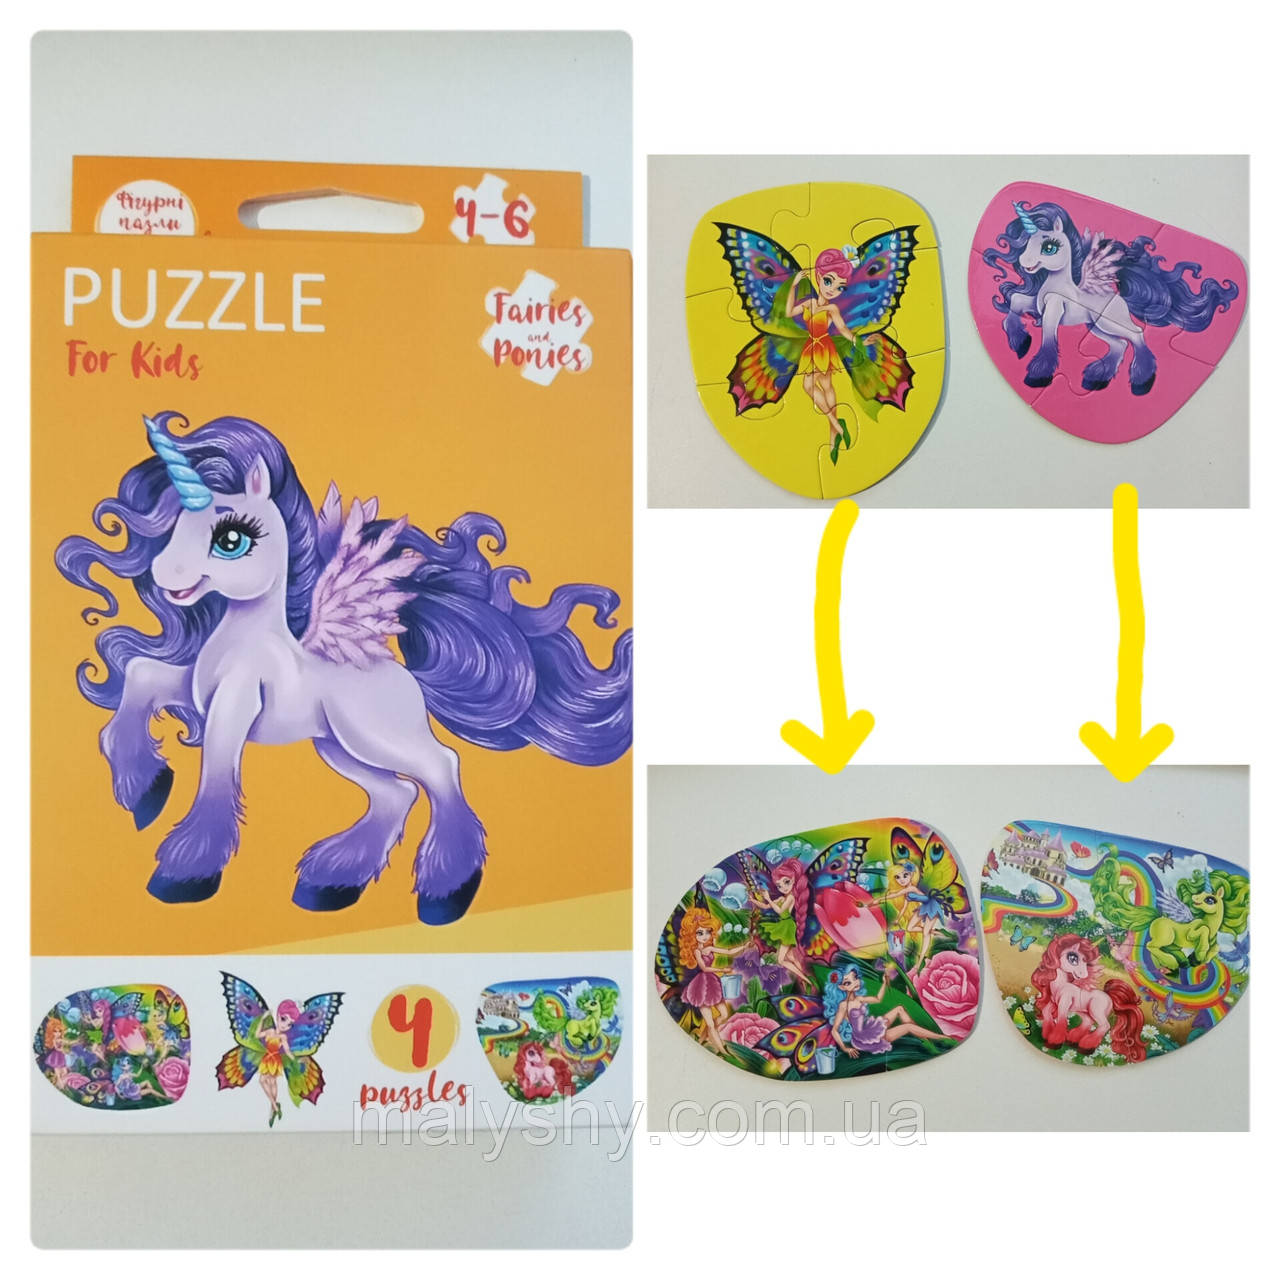 Развиваючі пазли для маленьких дітей "Puzzle For Kids" / Fairies and ponies